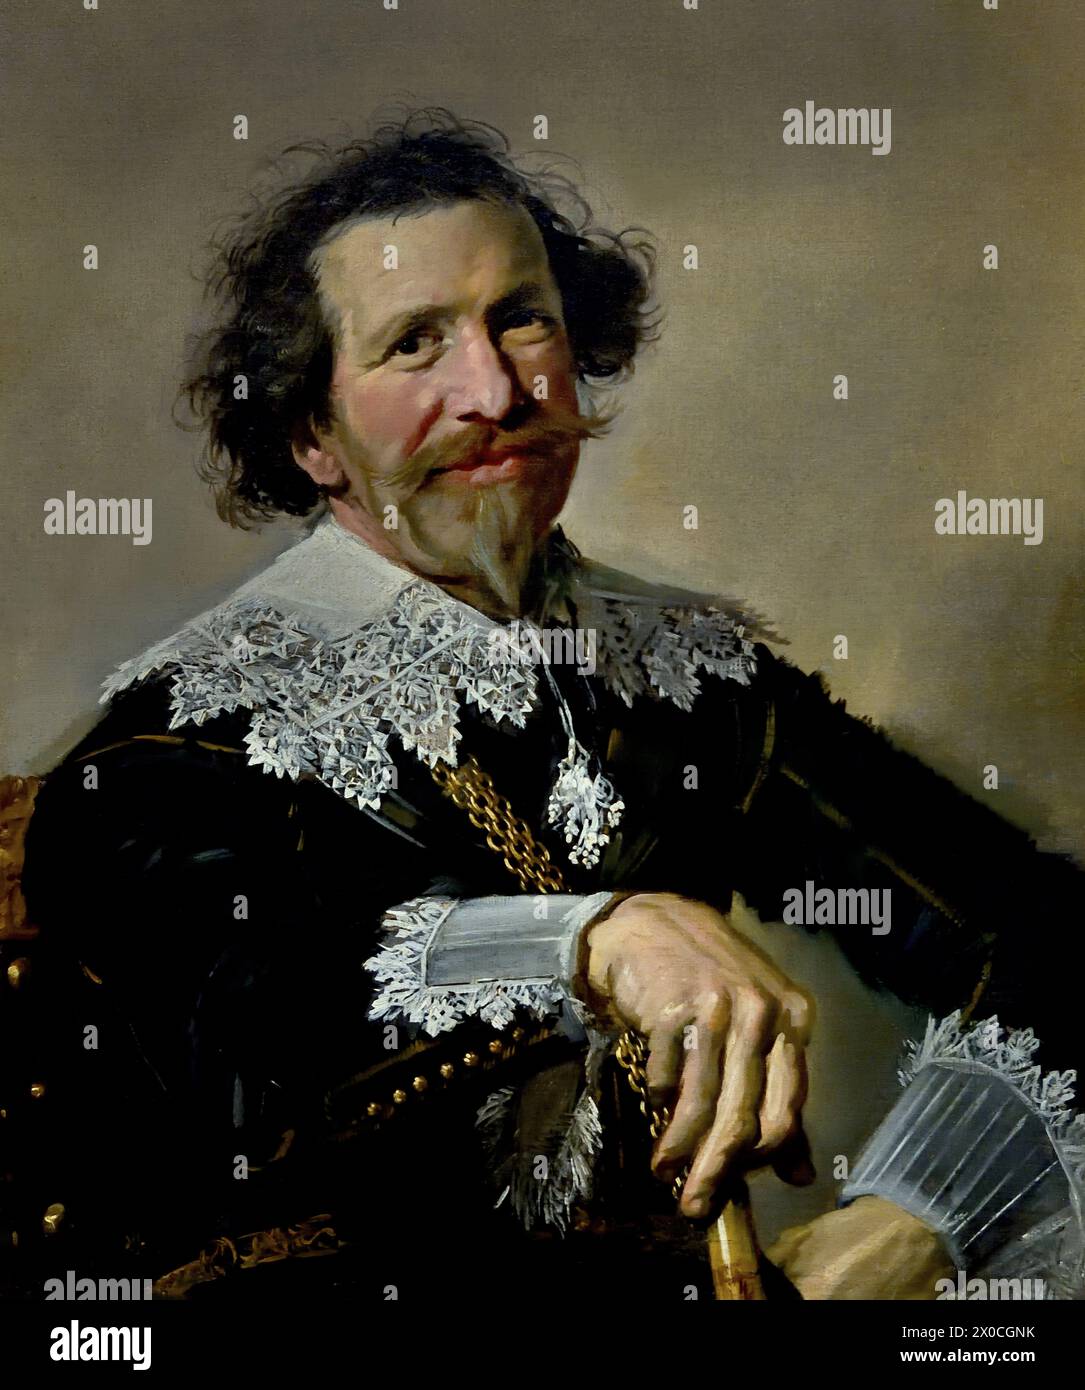 Pieter van den Broecke (Anvers, 1585 – Straat Malakka, 1640) était un marchand de tissus au service de la Compagnie néerlandaise des Indes orientales (VOC). Il a fait cinq voyages et a été sur la route pendant huit ans. Il fut l'un des premiers Néerlandais à boire du café. Frans Hals, 1582-1666, Anvers- Haarlem, Néerlandais, pays-Bas, XVIIe siècle, âge d'or néerlandais ( il peint des portraits vivants, parfois même joyeux, de personnes de tous les niveaux de la société, de personnes importantes, d'enfants méchants et même d'ivrognes ou de personnes déclarées folles ). Banque D'Images